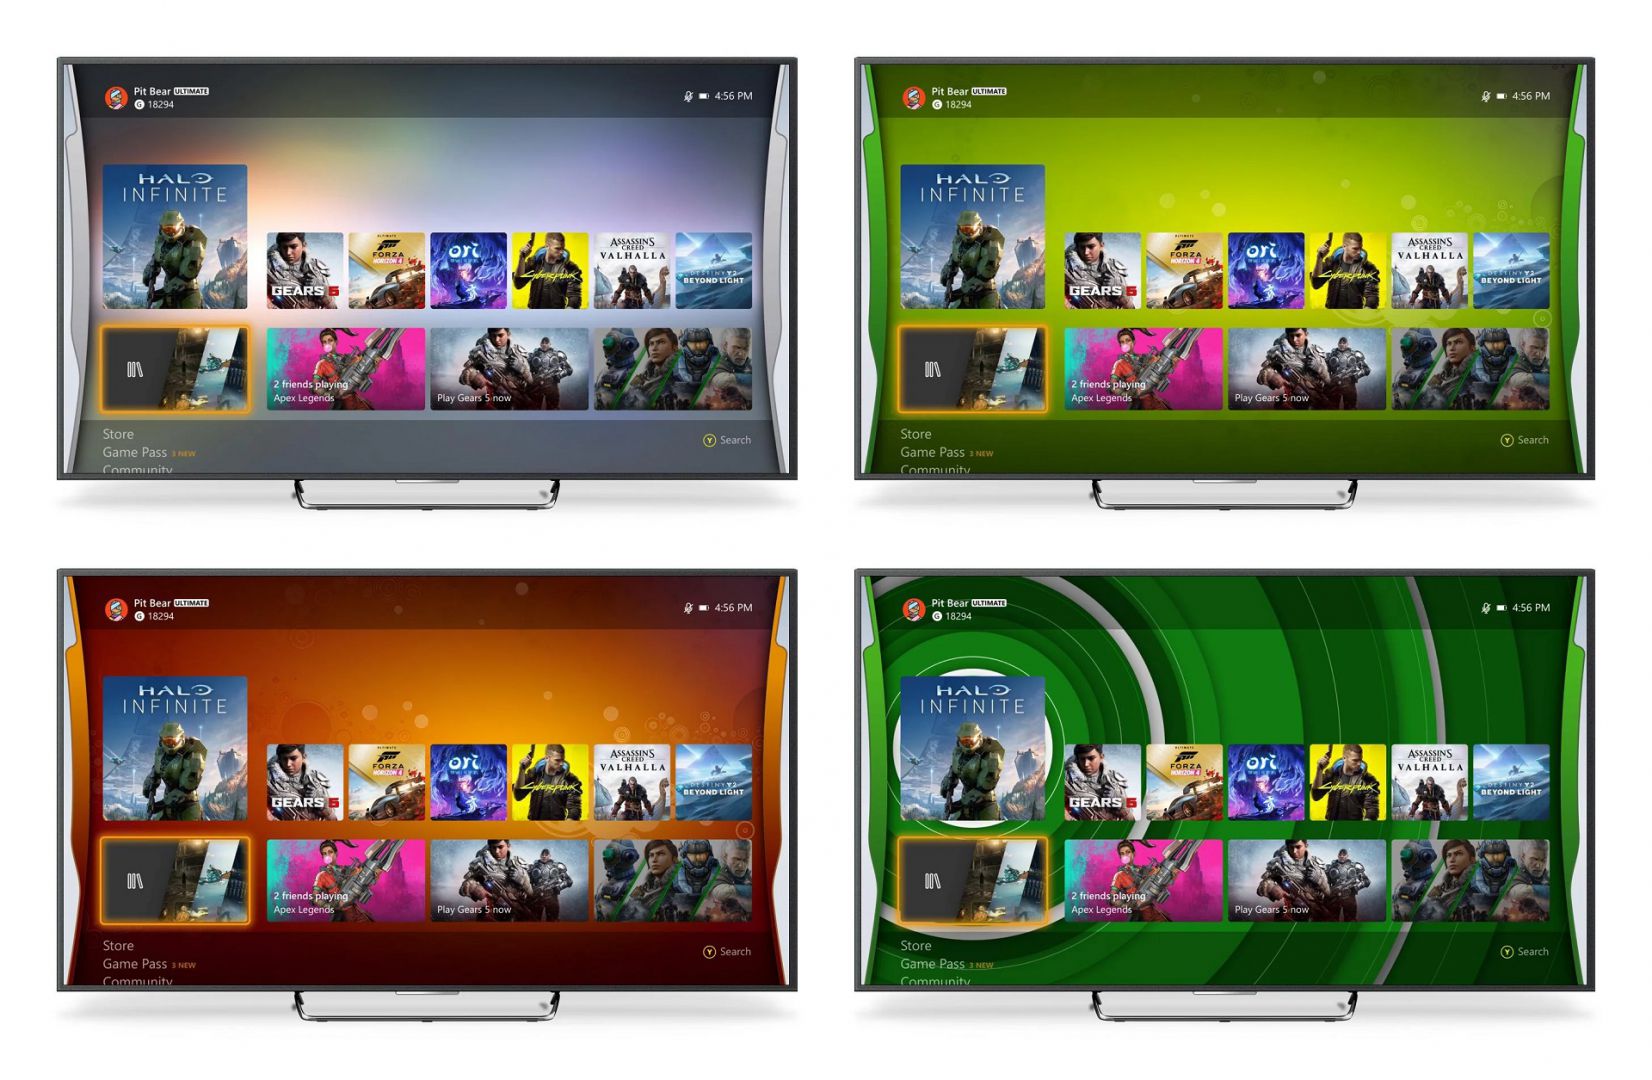 Un usuario crea la interfaz 'Blades' de Xbox 360 para usarla en Xbox One y Xbox Series - El usuario prasad1287 se ha currado estos fondos de pantalla para Xbox One y Xbox Series que emulan a la interfaz de Xbox 360. Hazte con ellos.